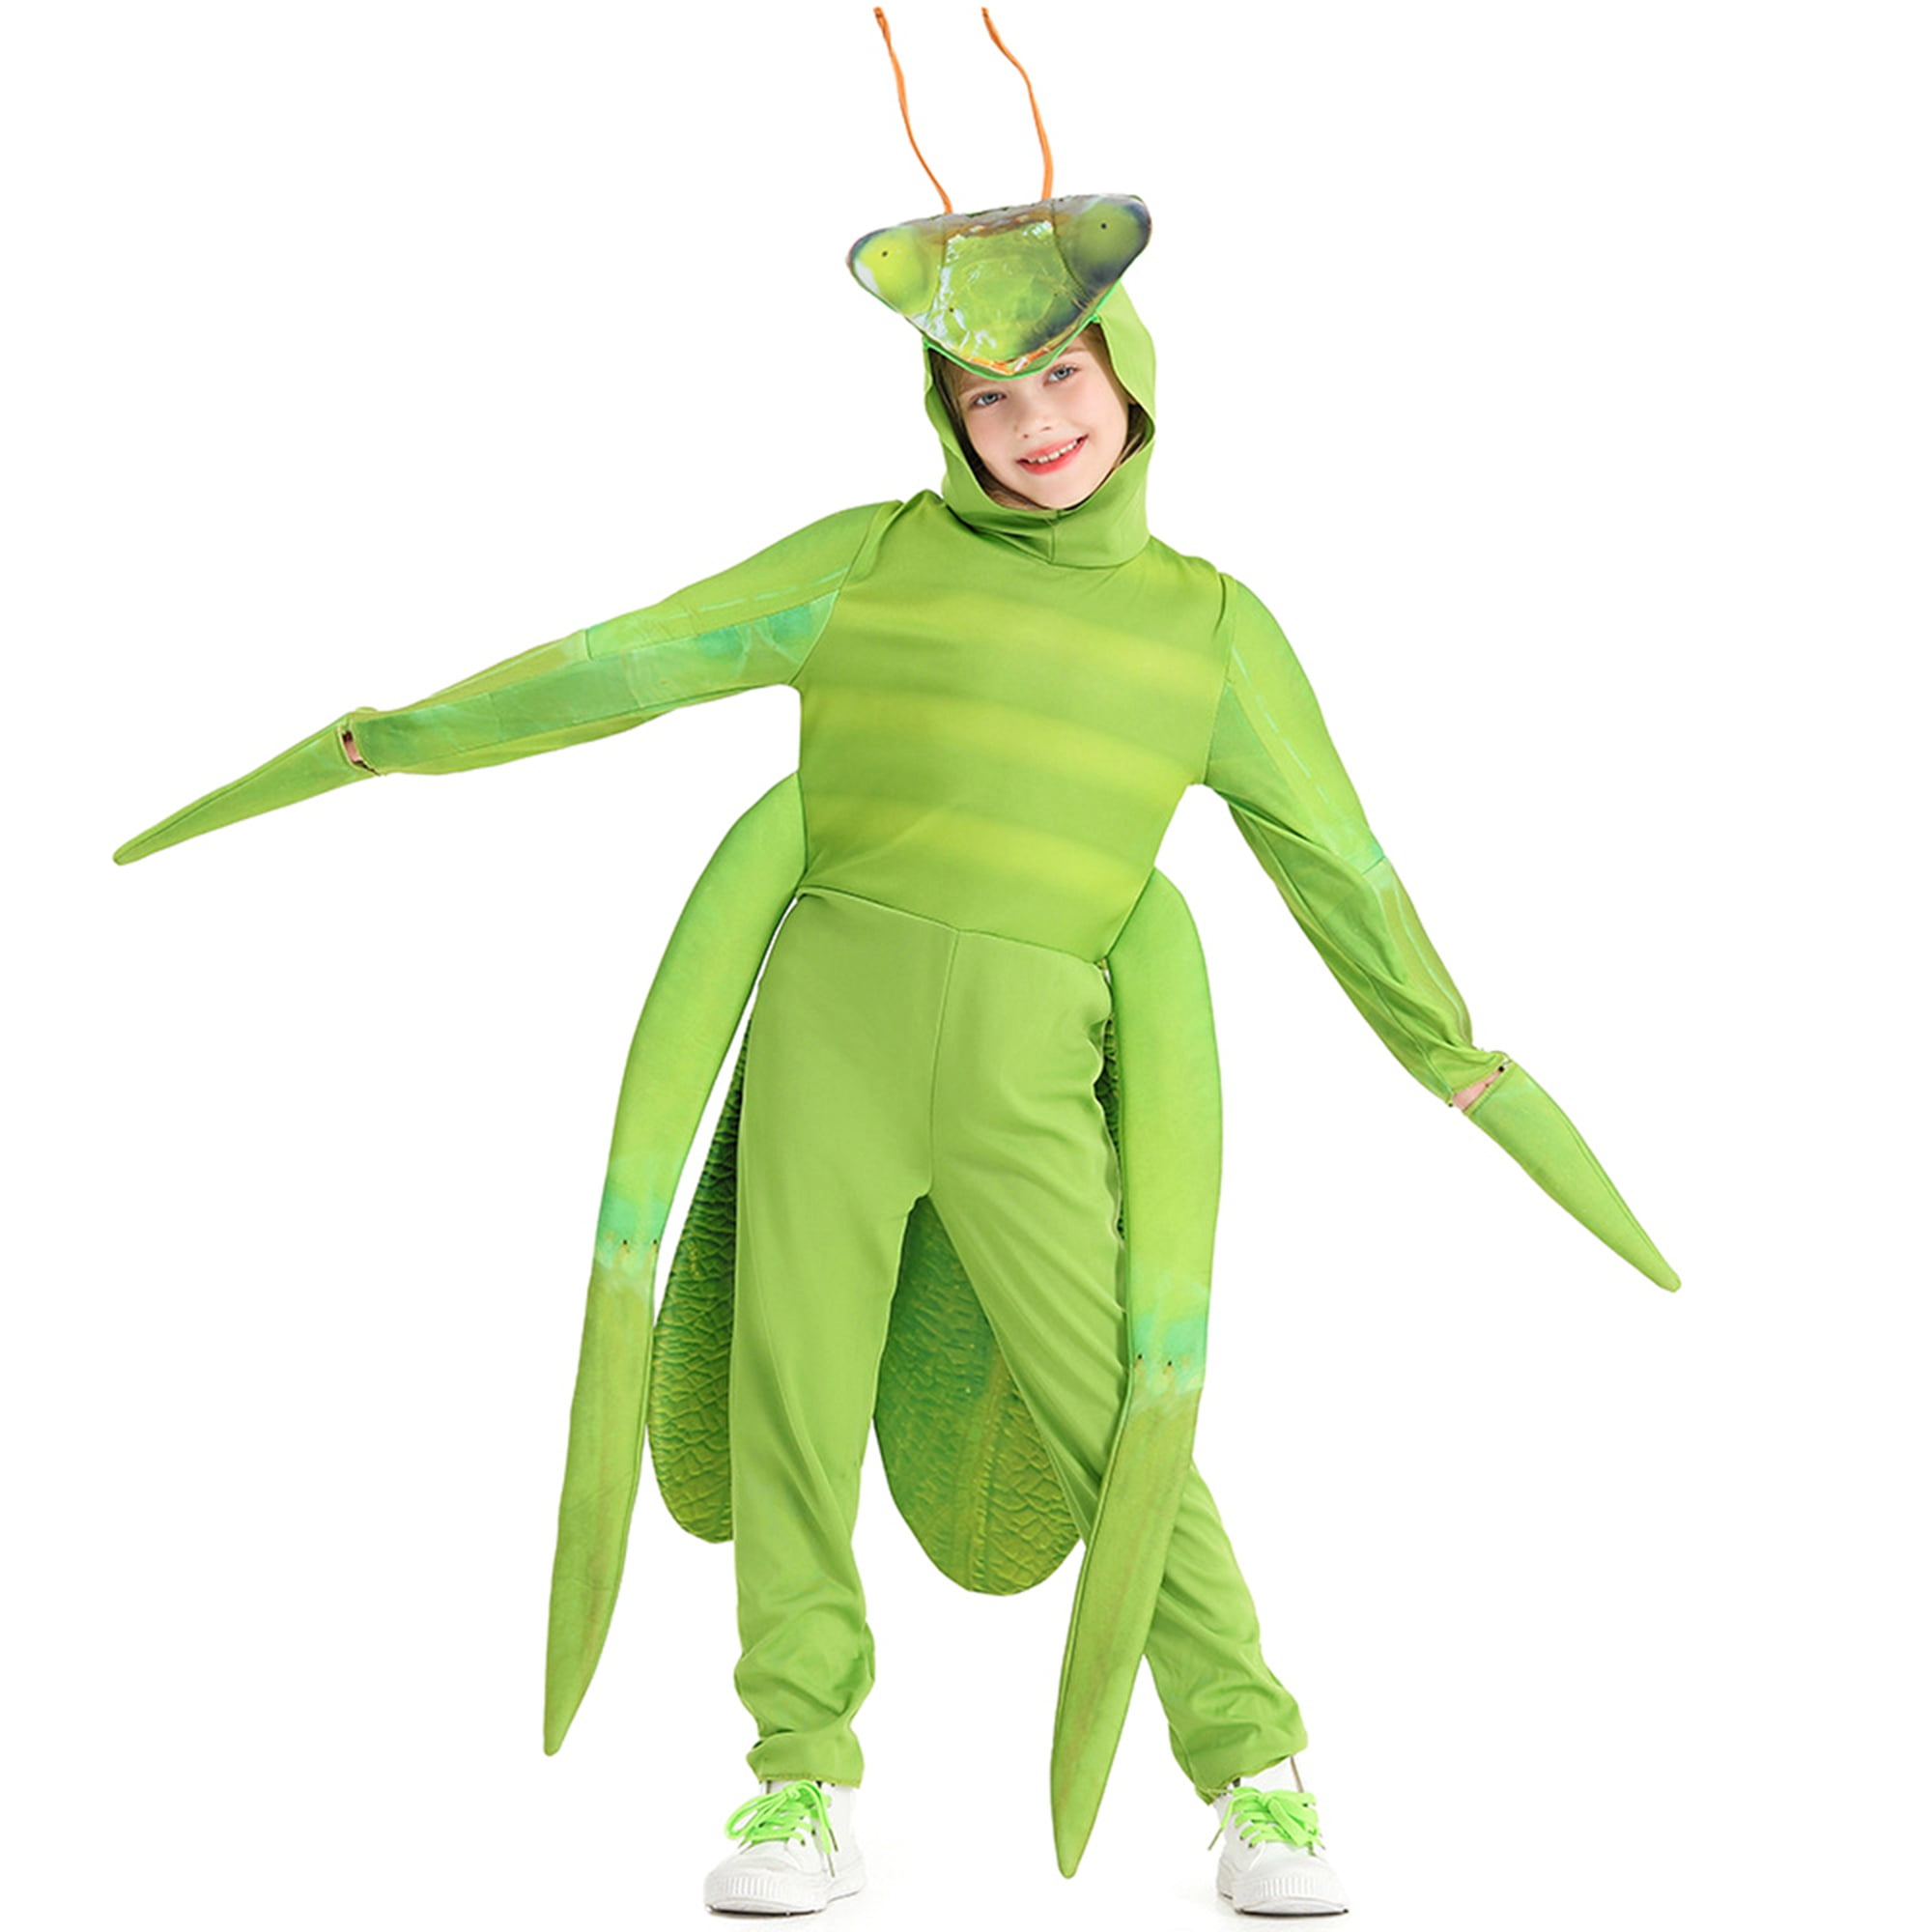 Praying Mantis Costume for Kids, Green Praying Mantis Jumpsuit and ...